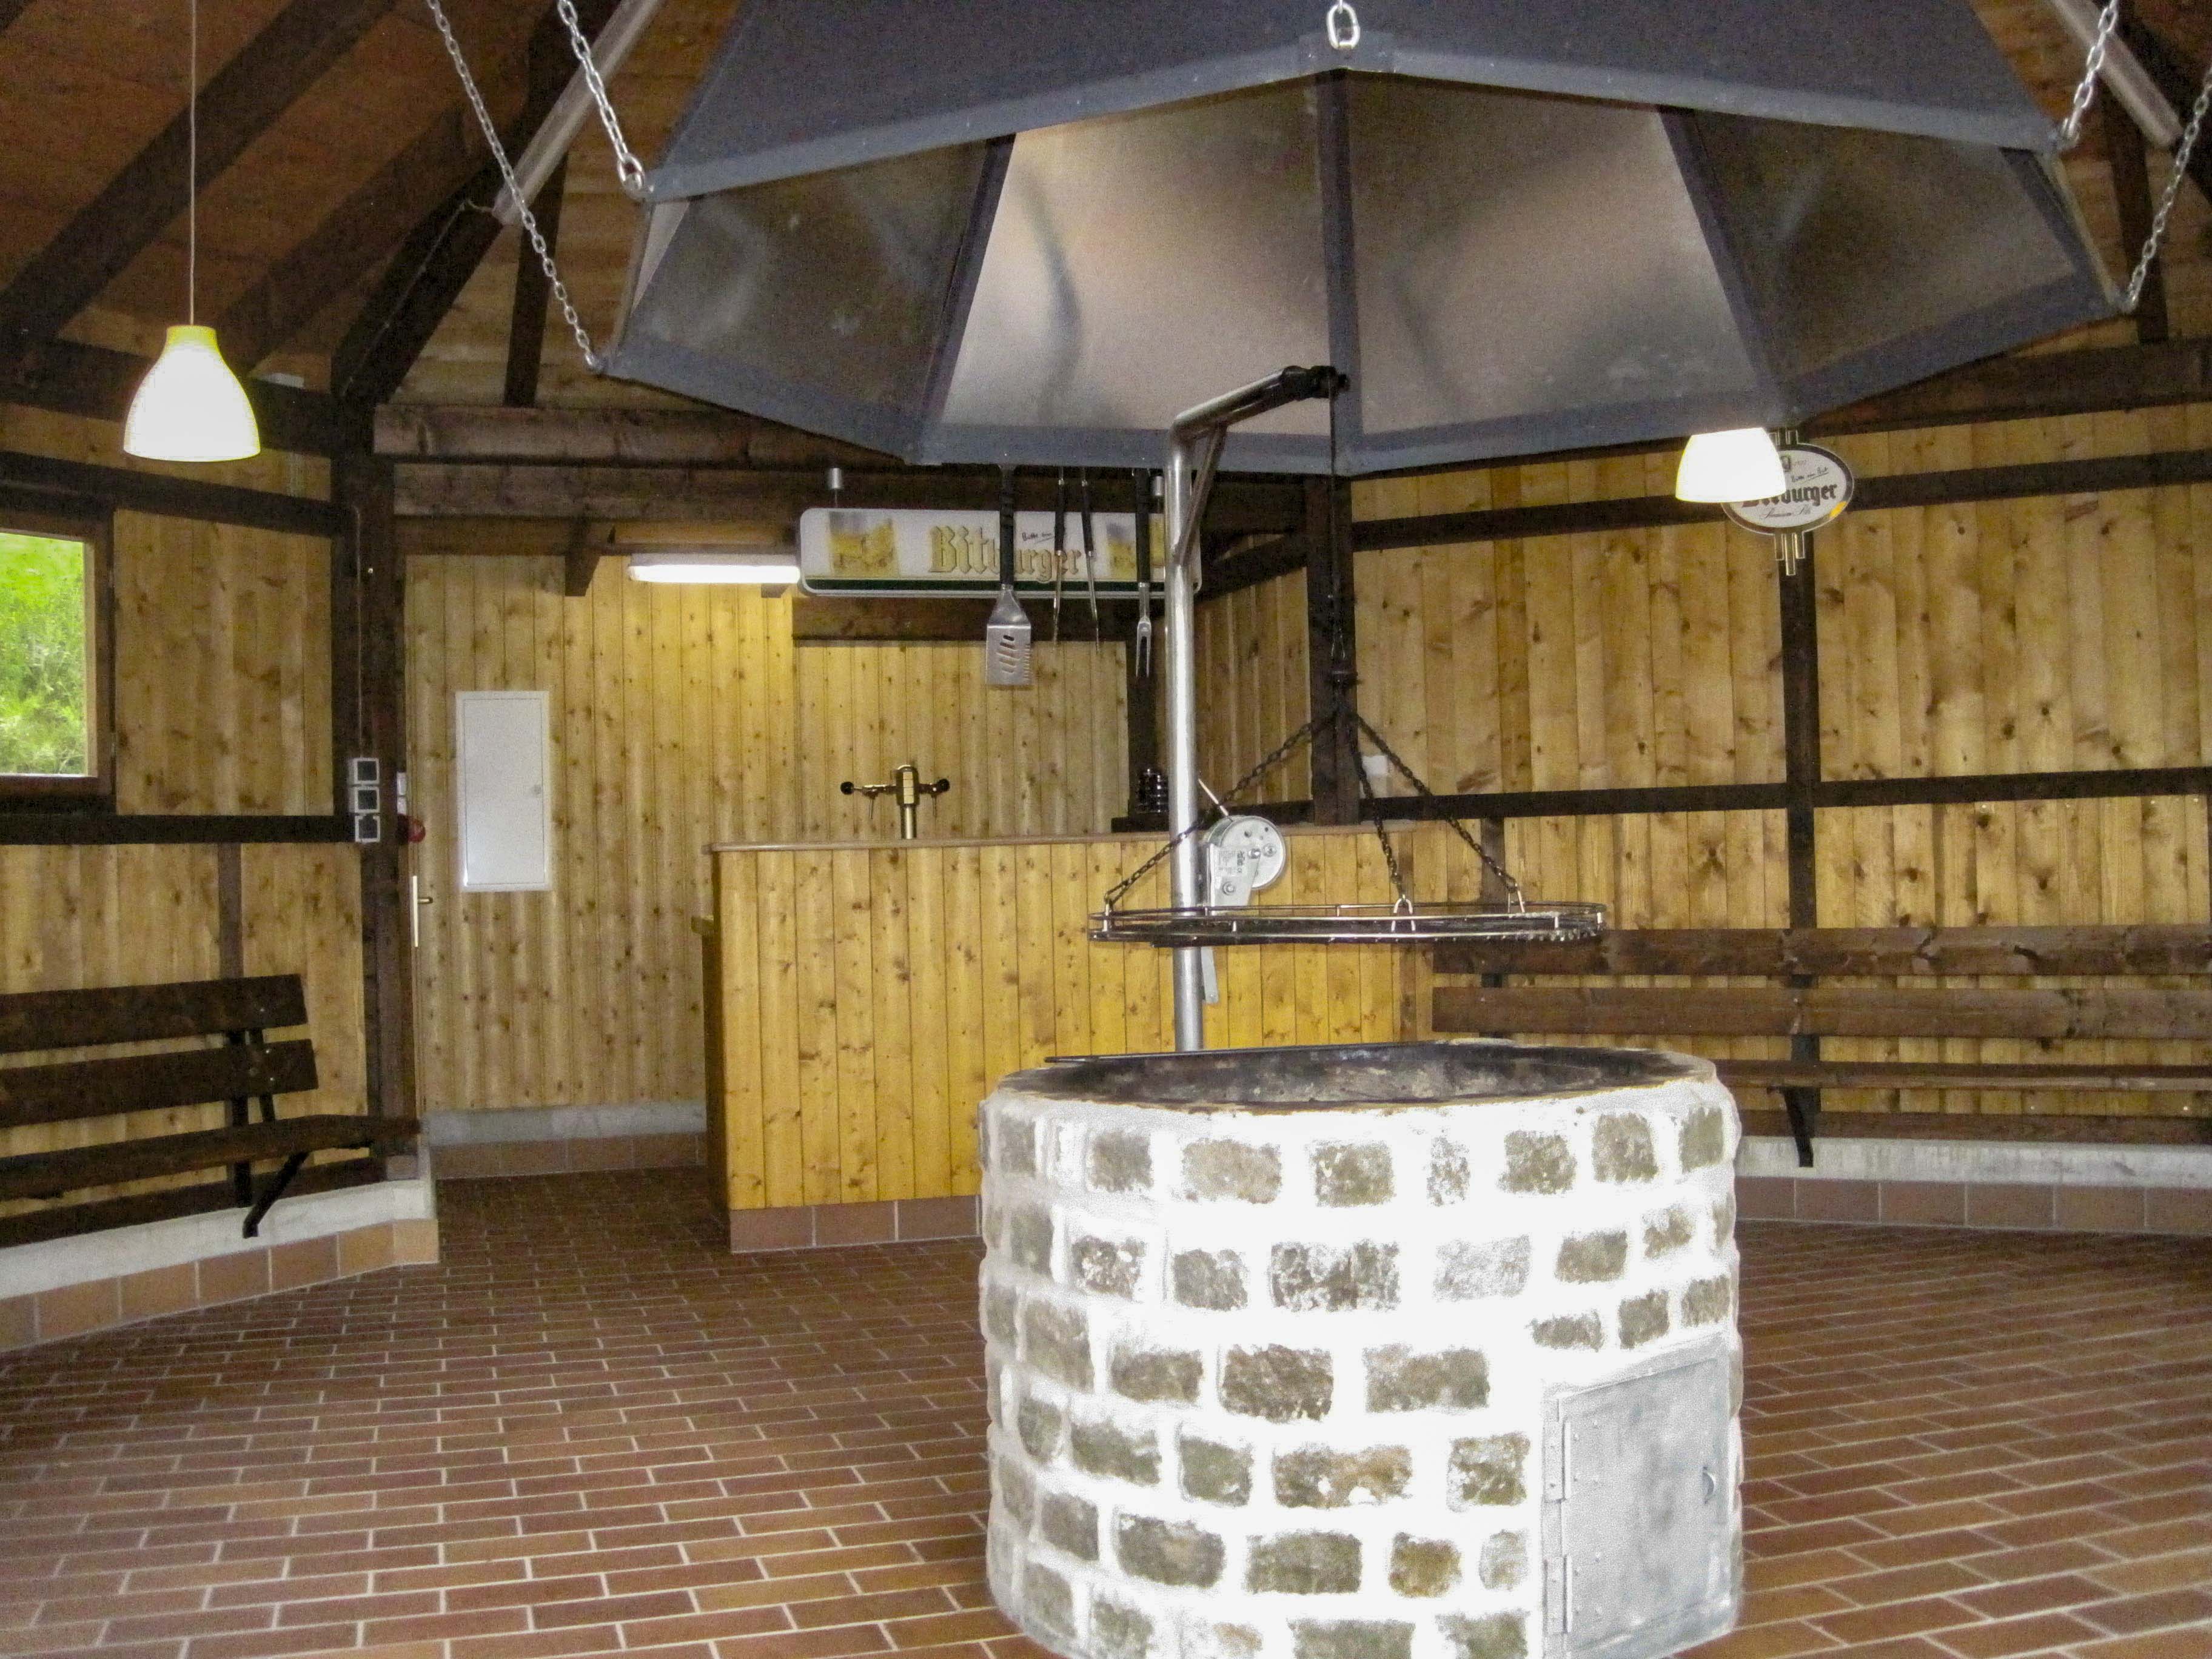 Grillhütte Neroth, 31. Juli 2012